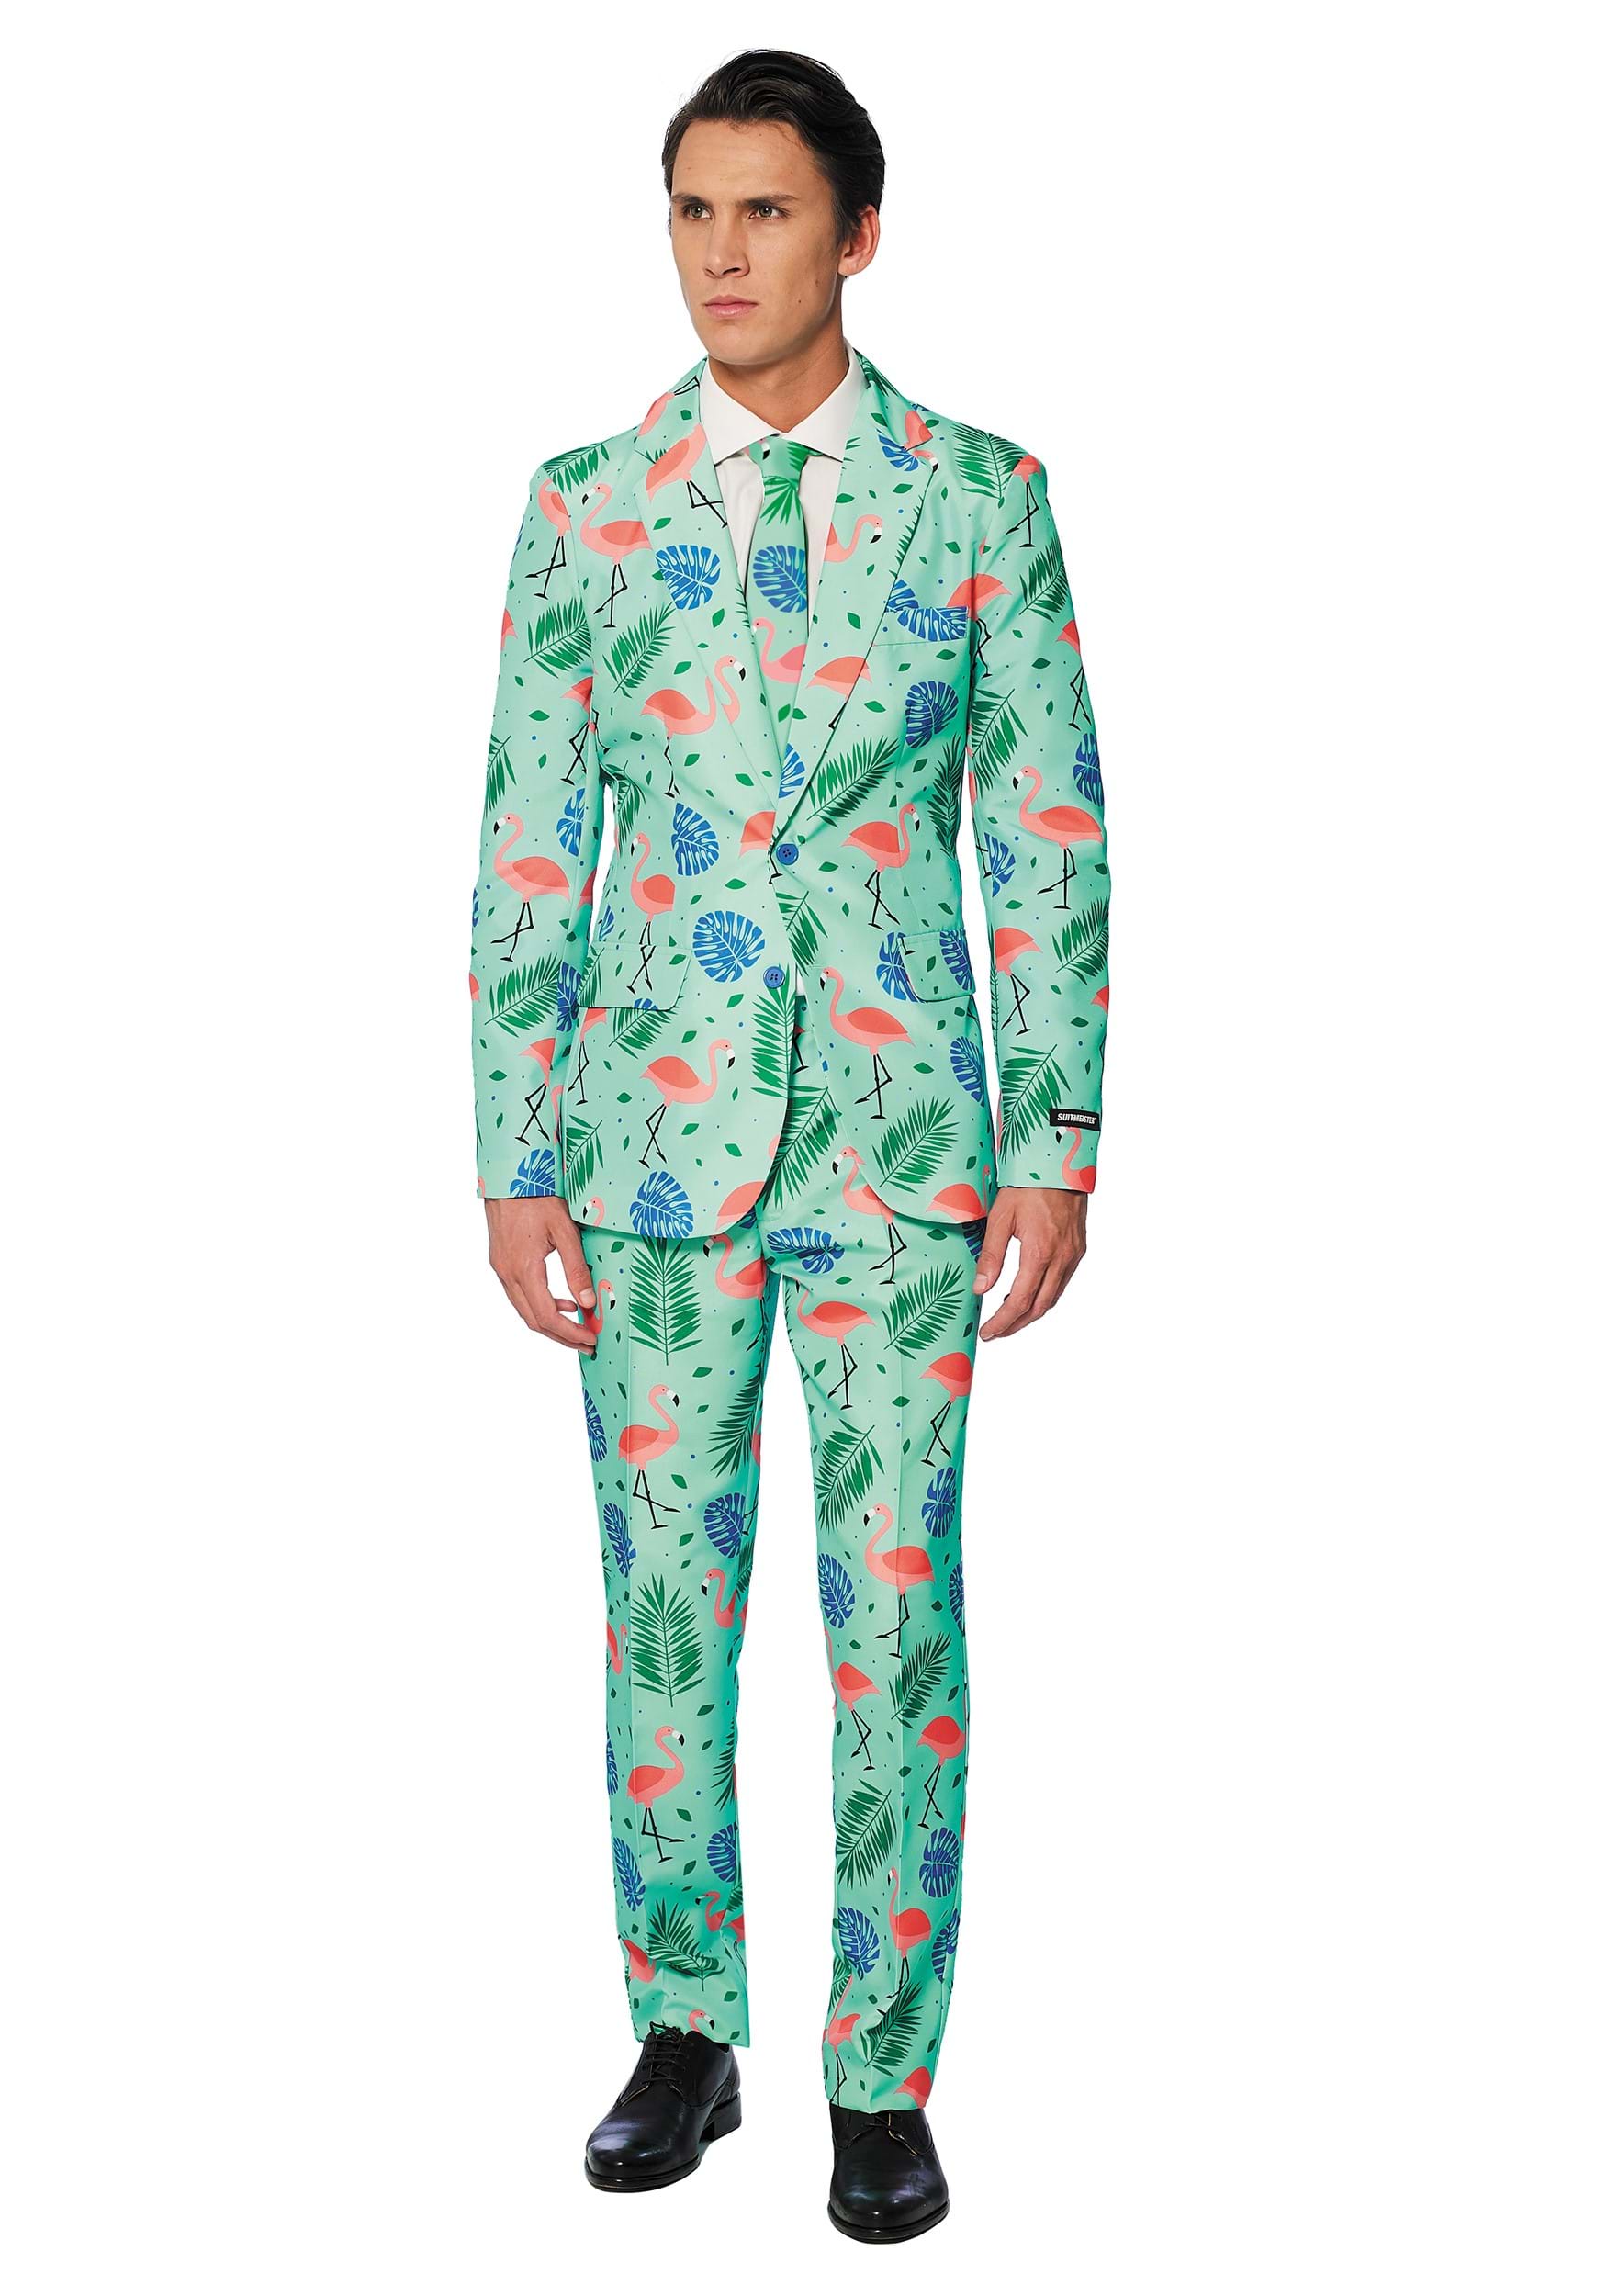 Men's Suitmeister Tropical Suit Fancy Dress Costume